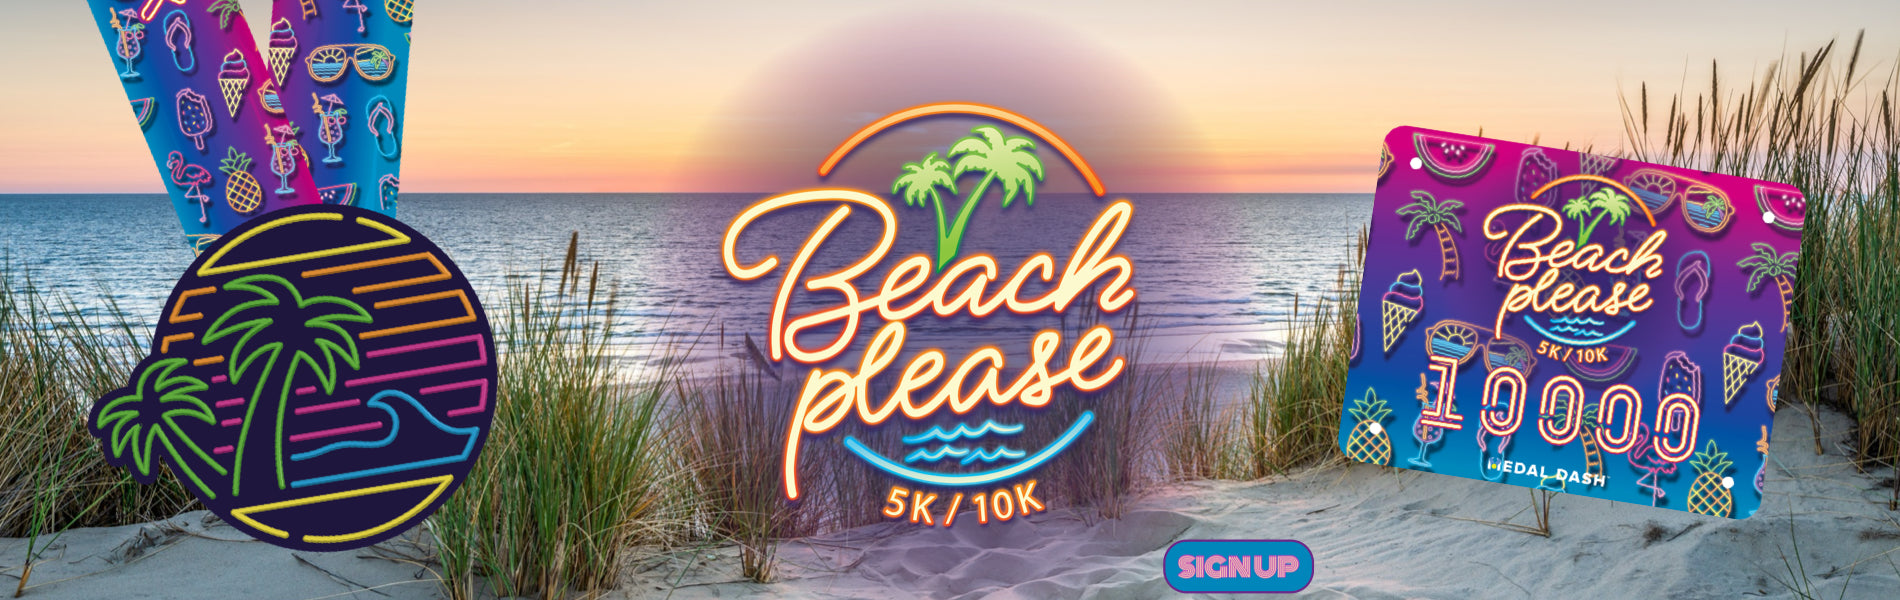 BEACH PLEASE 5K 10K MEDAL DASH VIRTUAL RUN